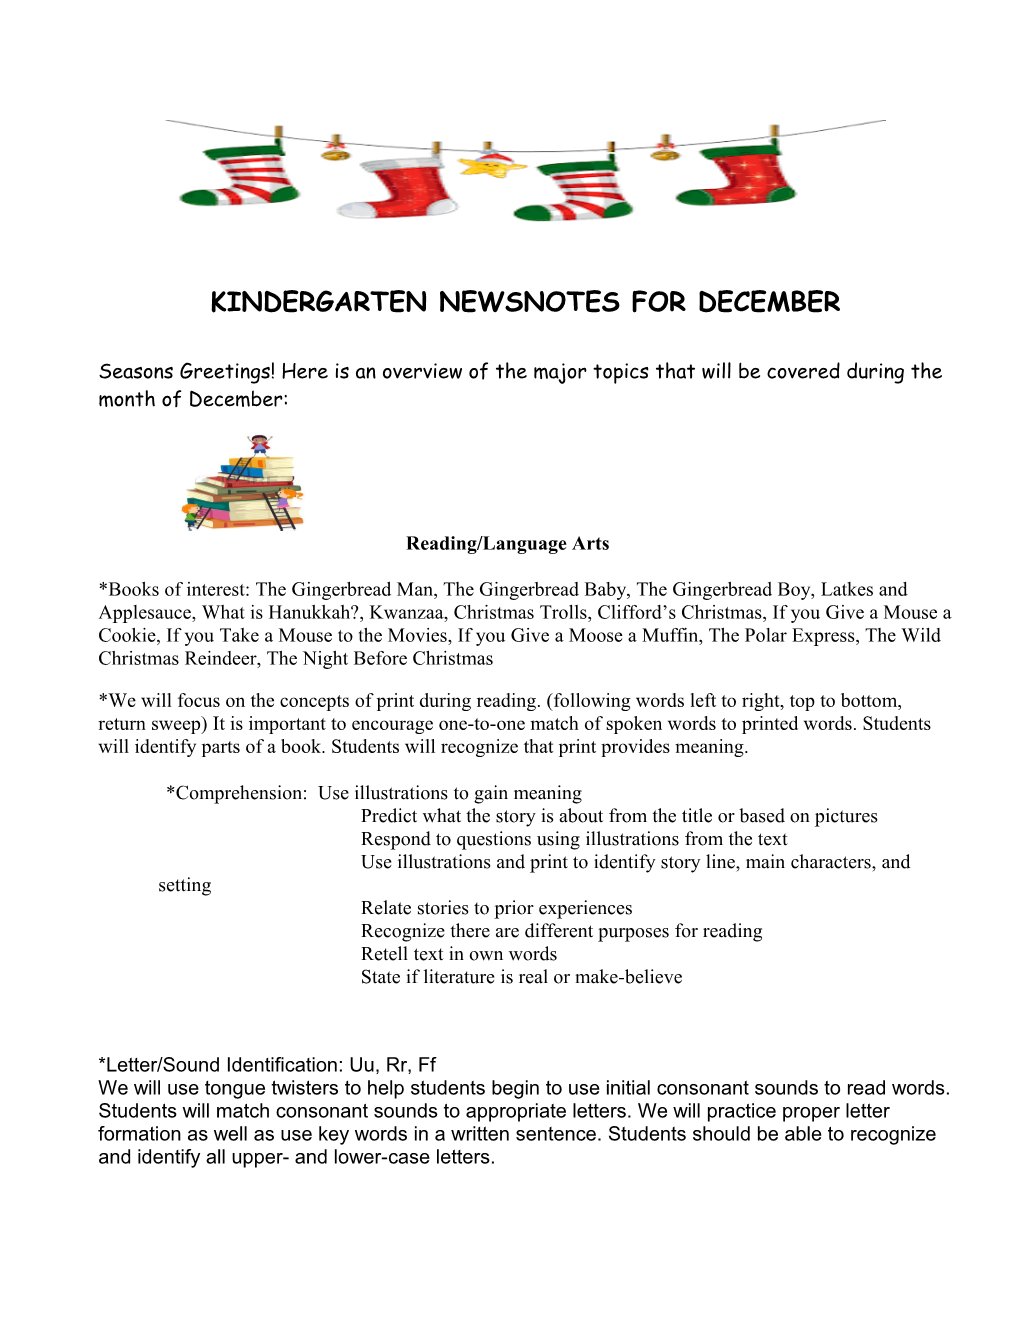 Kindergarten Newsnotes for December